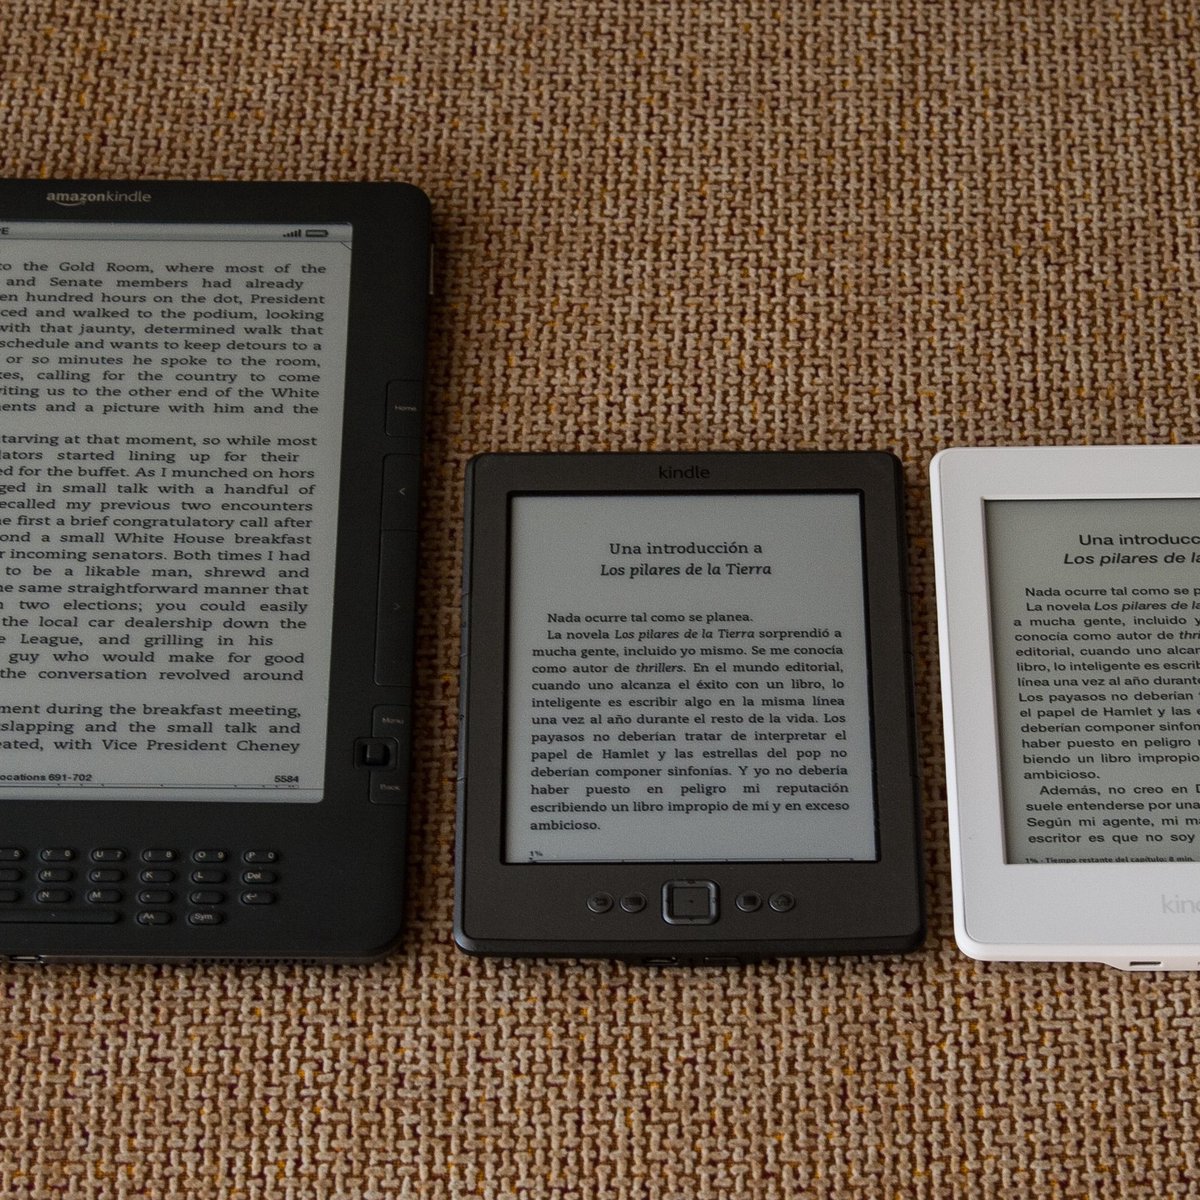 Tableta con lector de libros electrónicos, Lector de libros electrónicos  negro de 6 pulgadas Dispositivos de lectura electrónica Diseño de próxima  generación